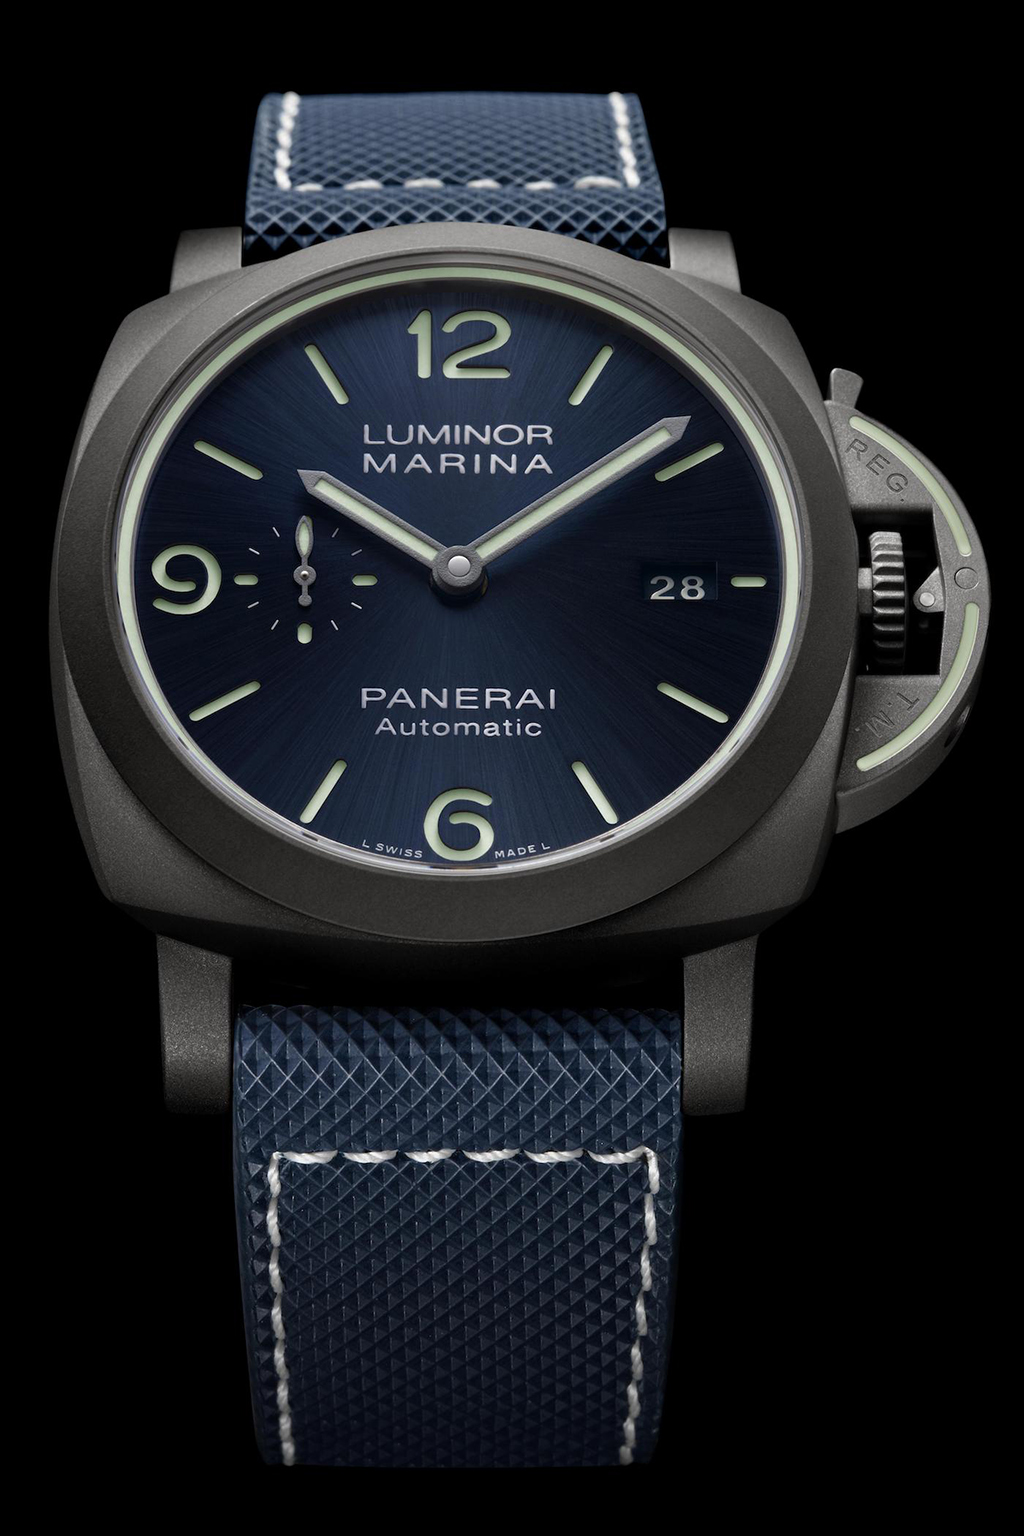 Panerai Luminor Marina 70 週年——推出新材質「70 年保修」腕表 最新資訊 腕表發佈 